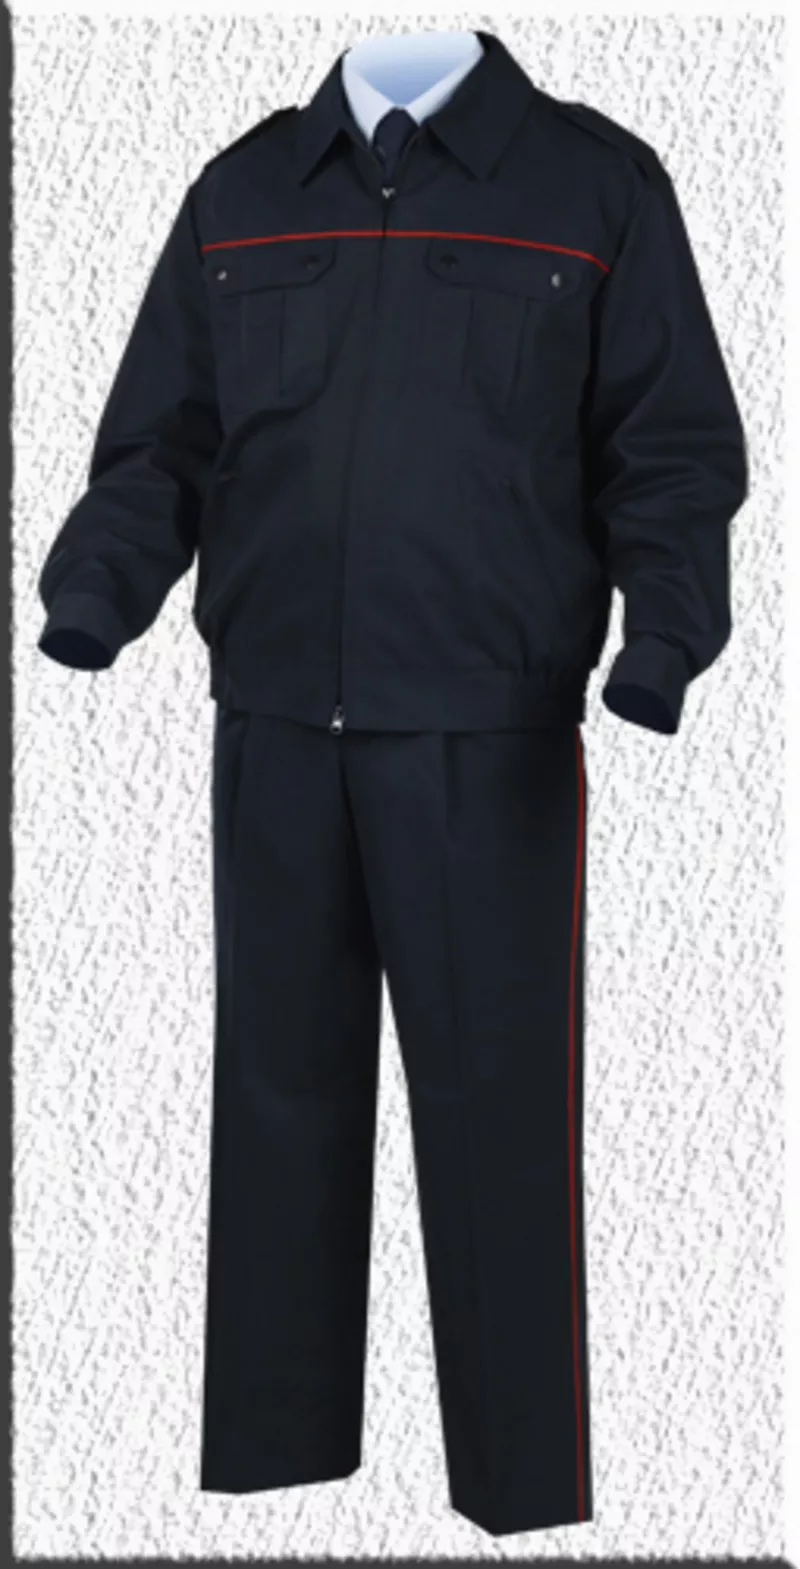 форменная куртка для сотрудников мвд полиции мужской летний костюм 4